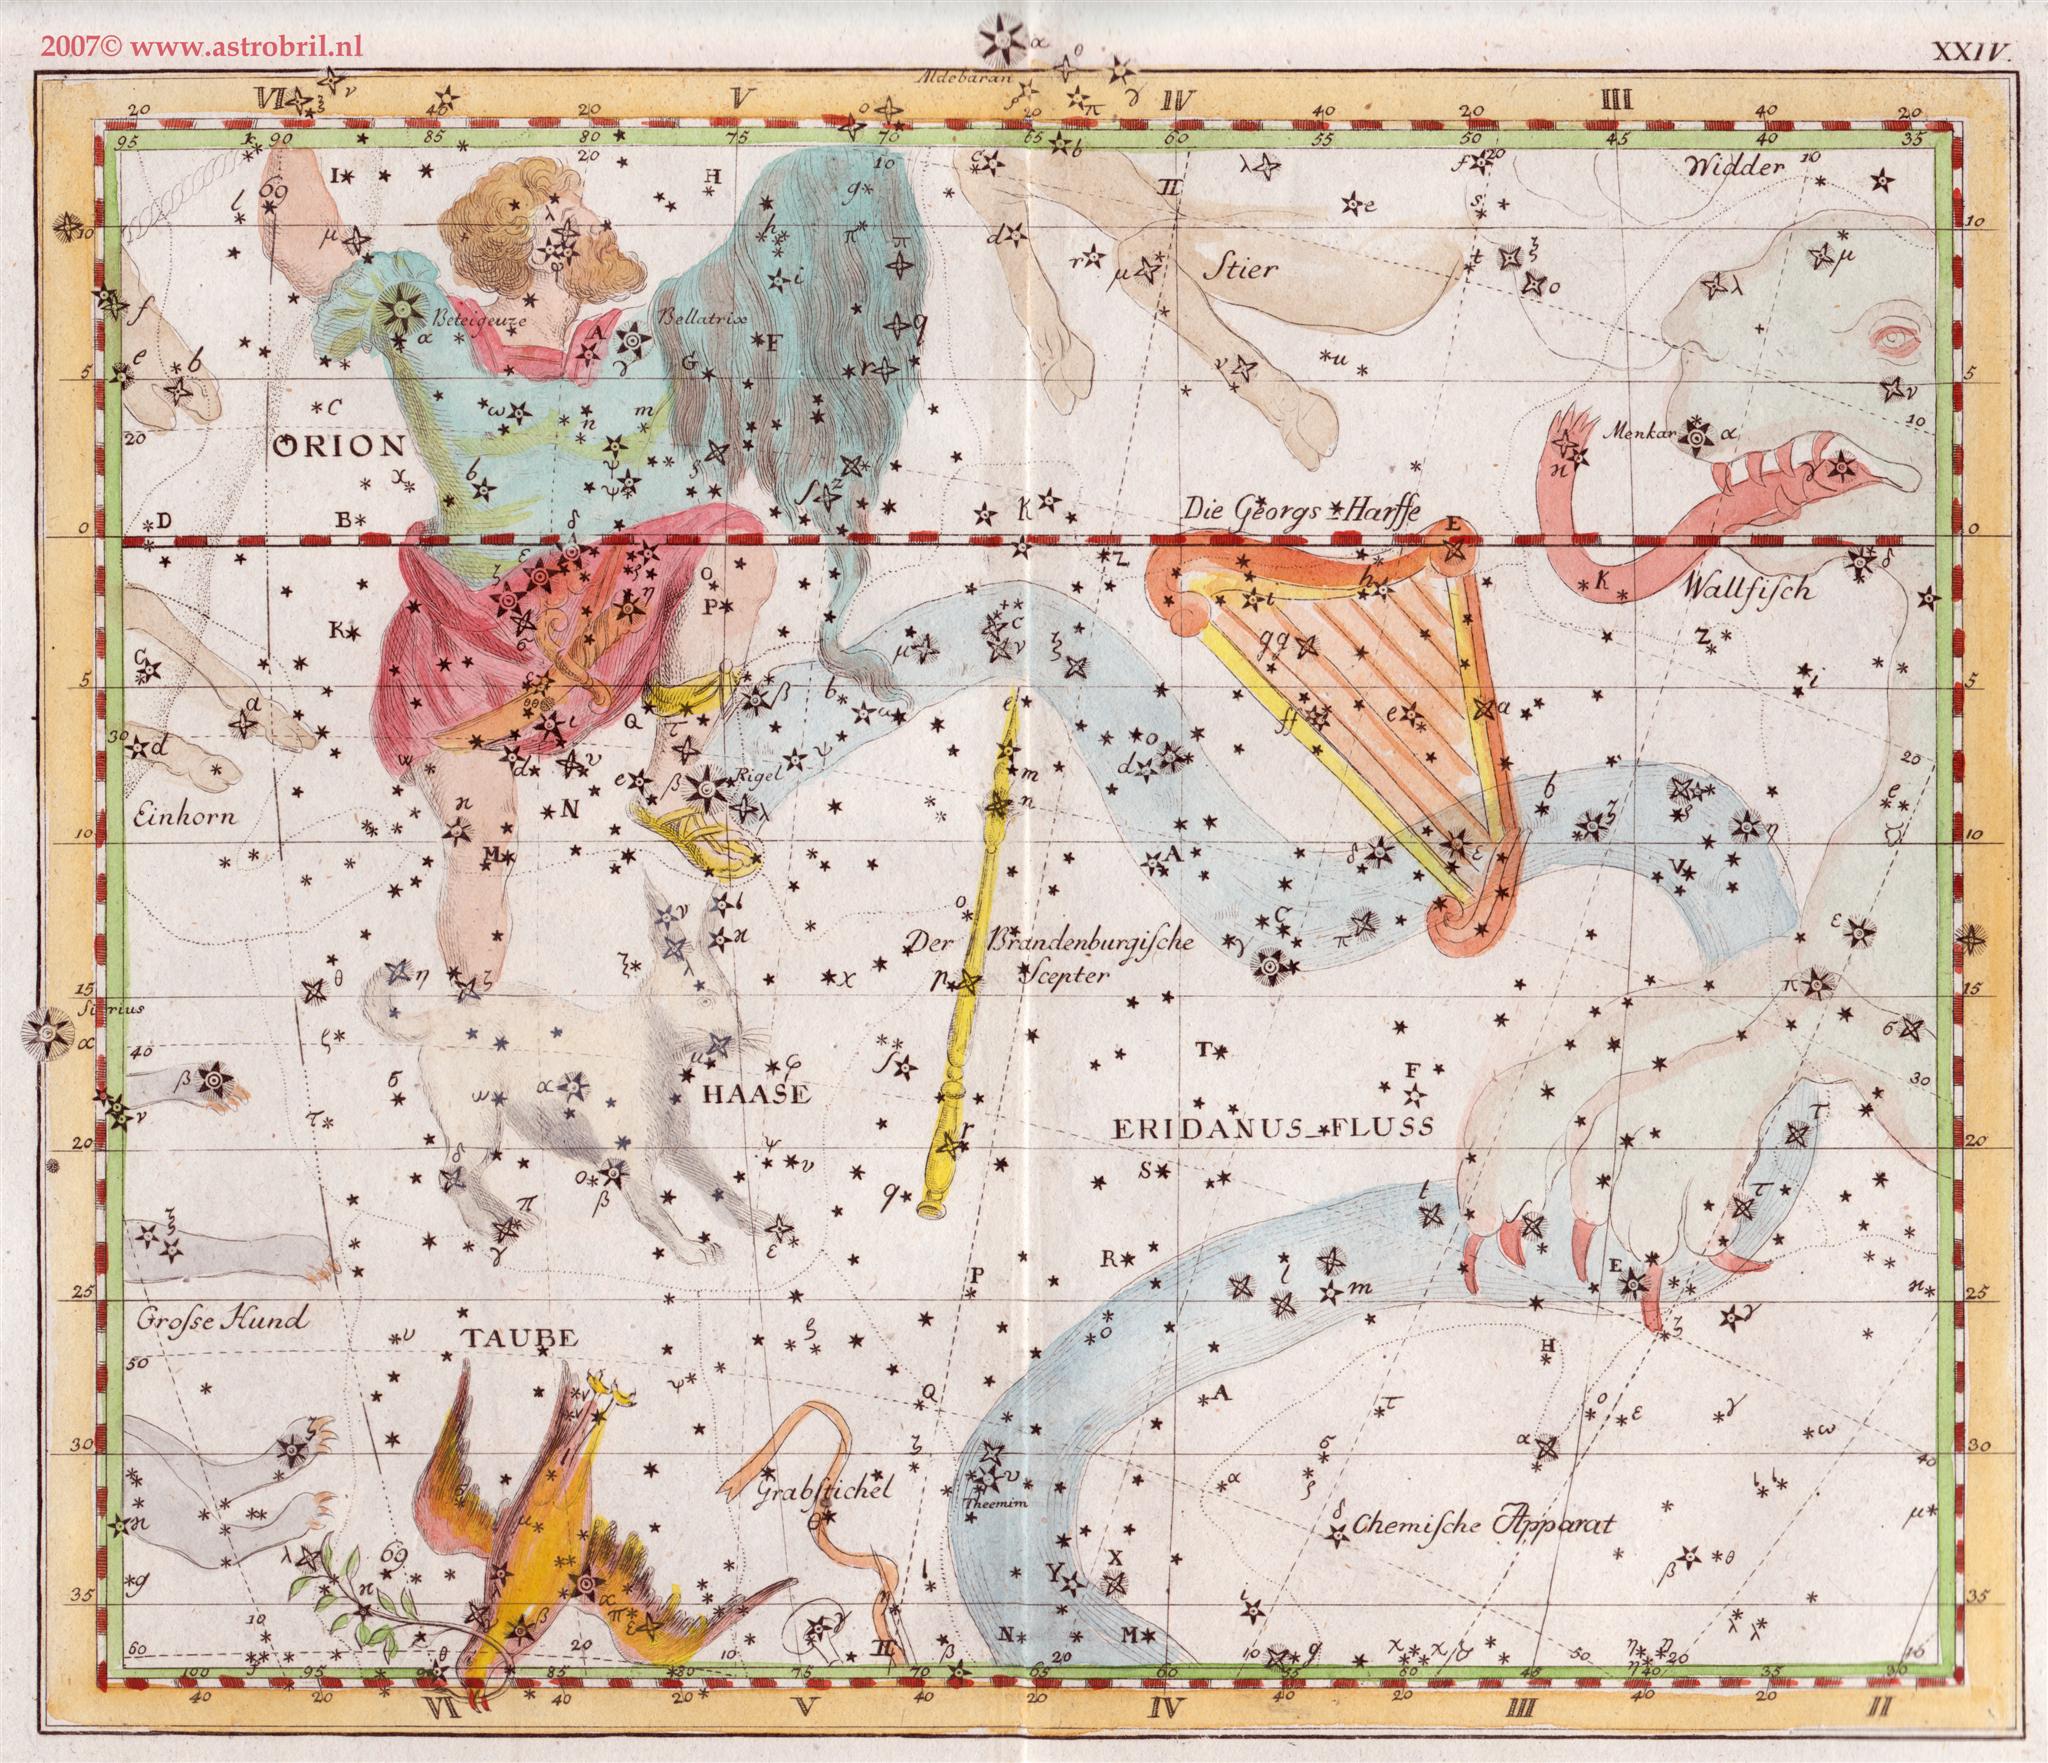 Tafel XXIV - Der Eridanus Fluss; der Grabstichel; der Brandenburgische Scepter; Orion; der Haase; die Taube; die Georgs Harffe